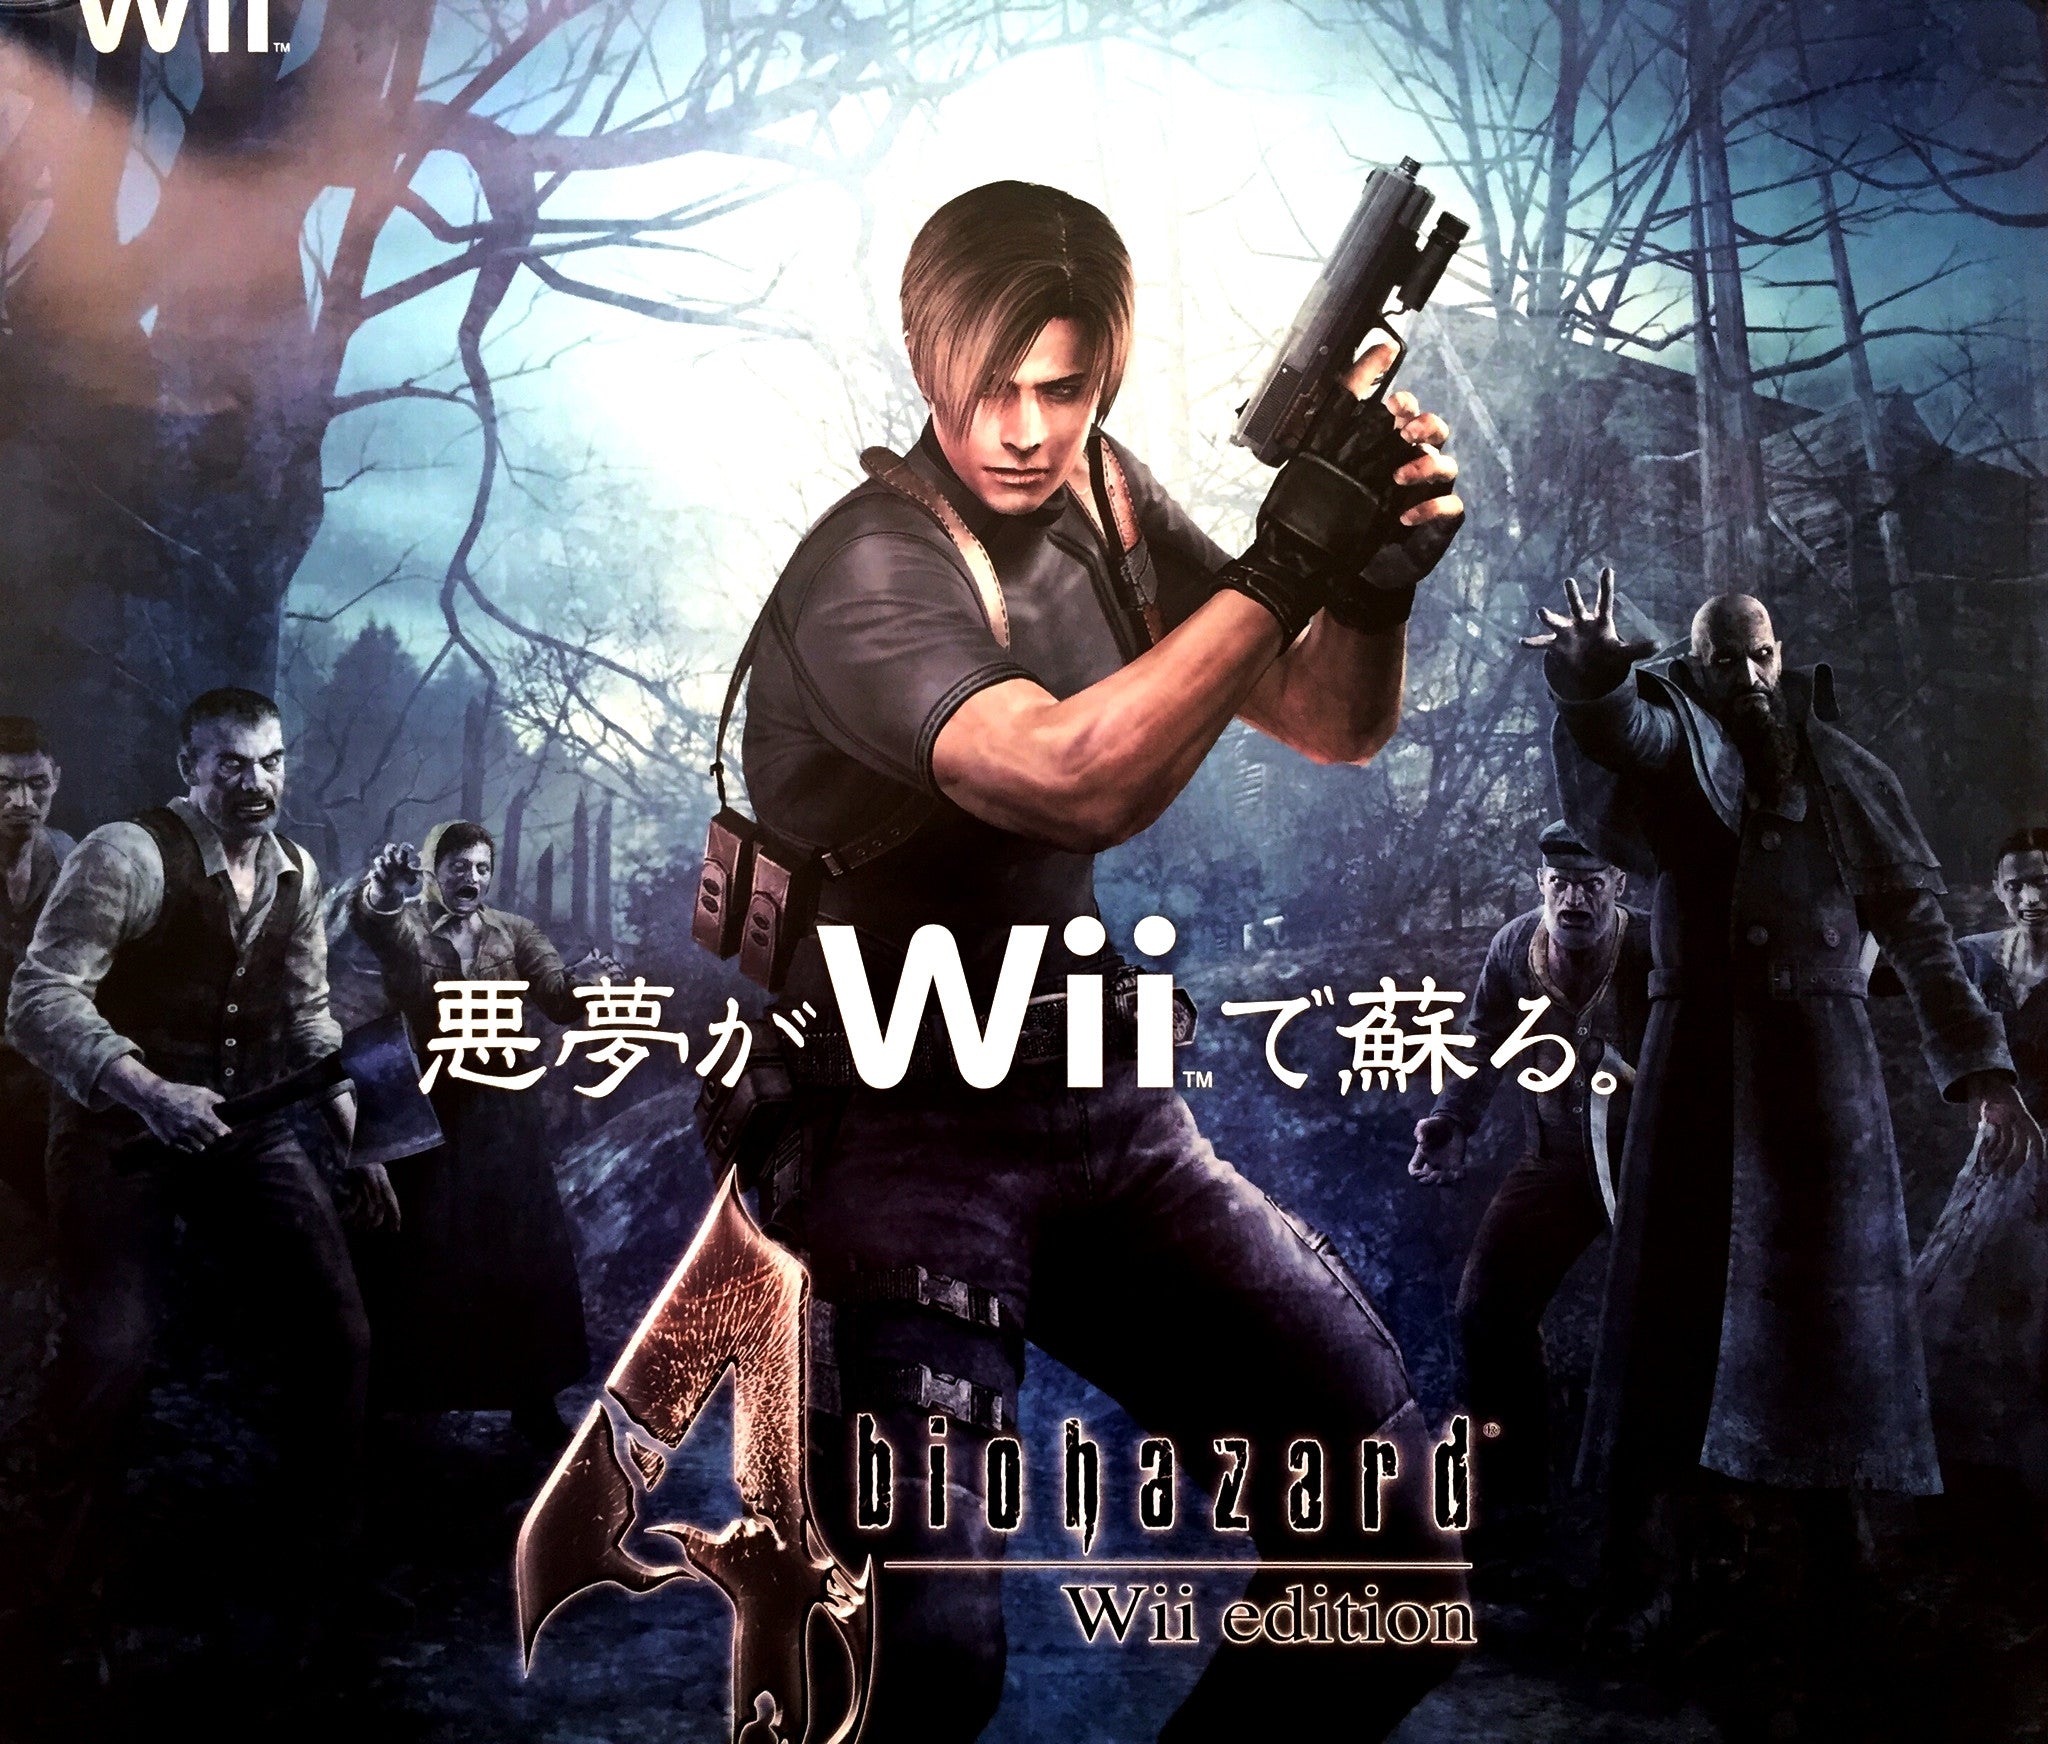 Resident Evil 4 (B2) Japanese Promotional Poster #2